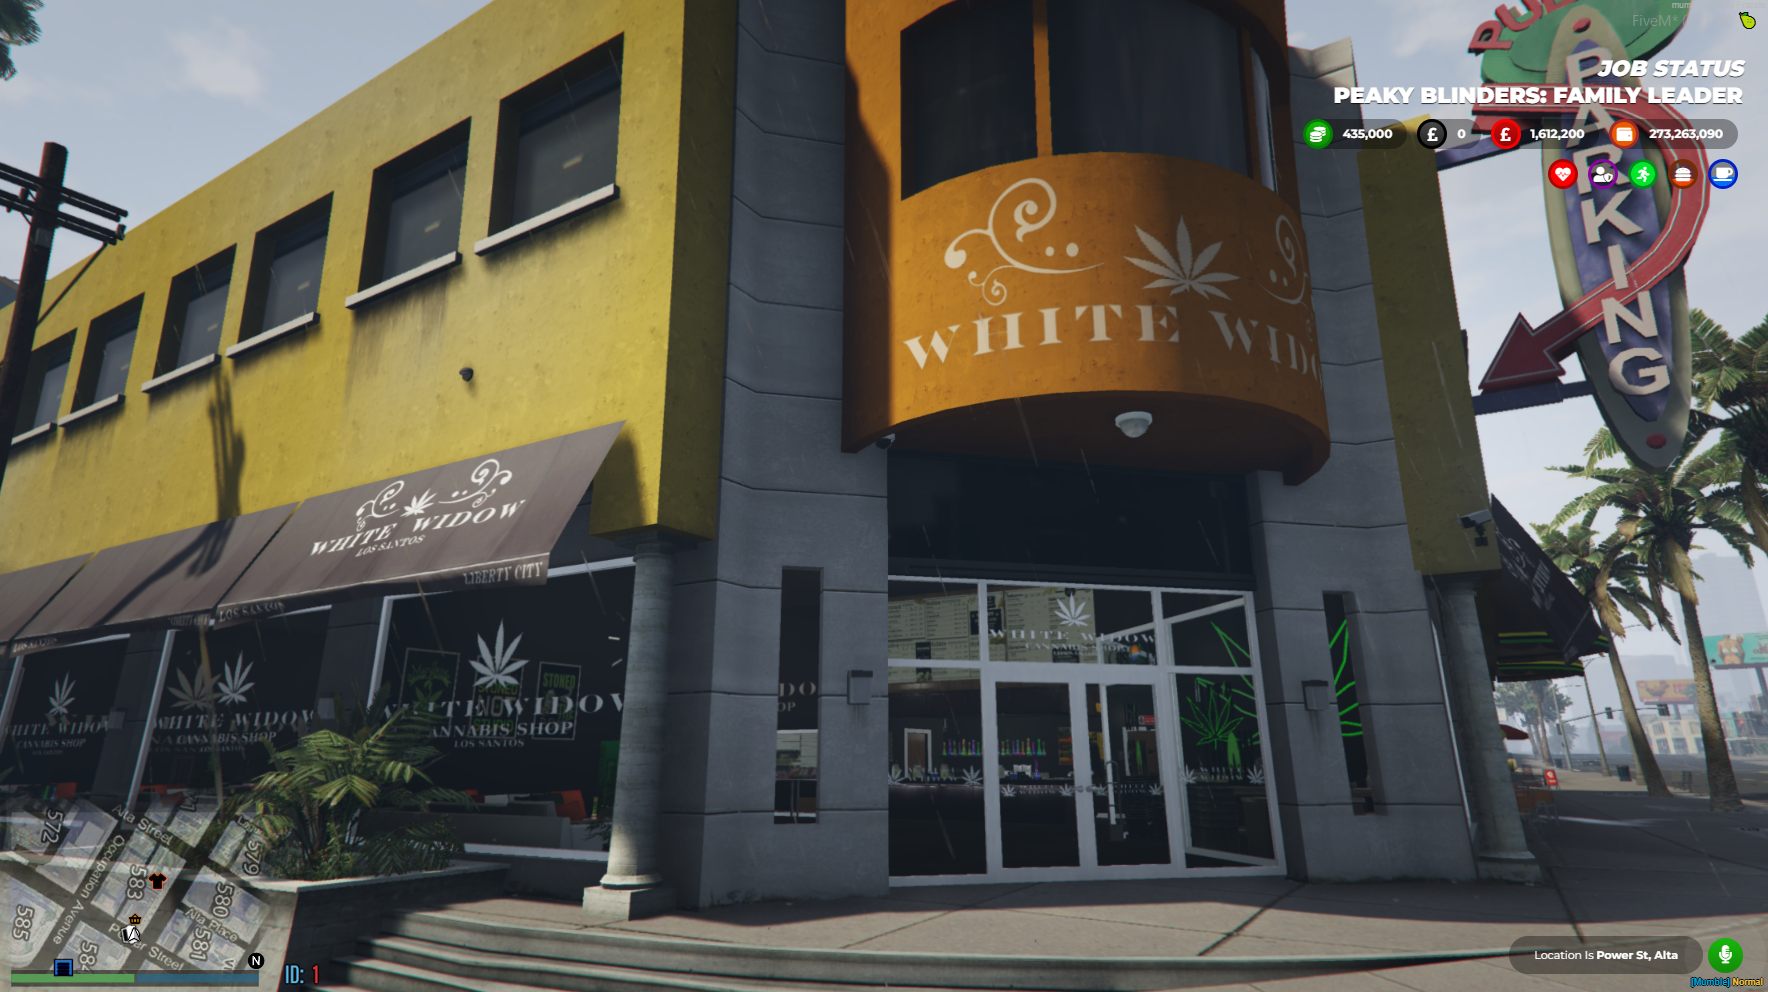 White Widow FiveM Map Marijuana Shop And Underground Growroom